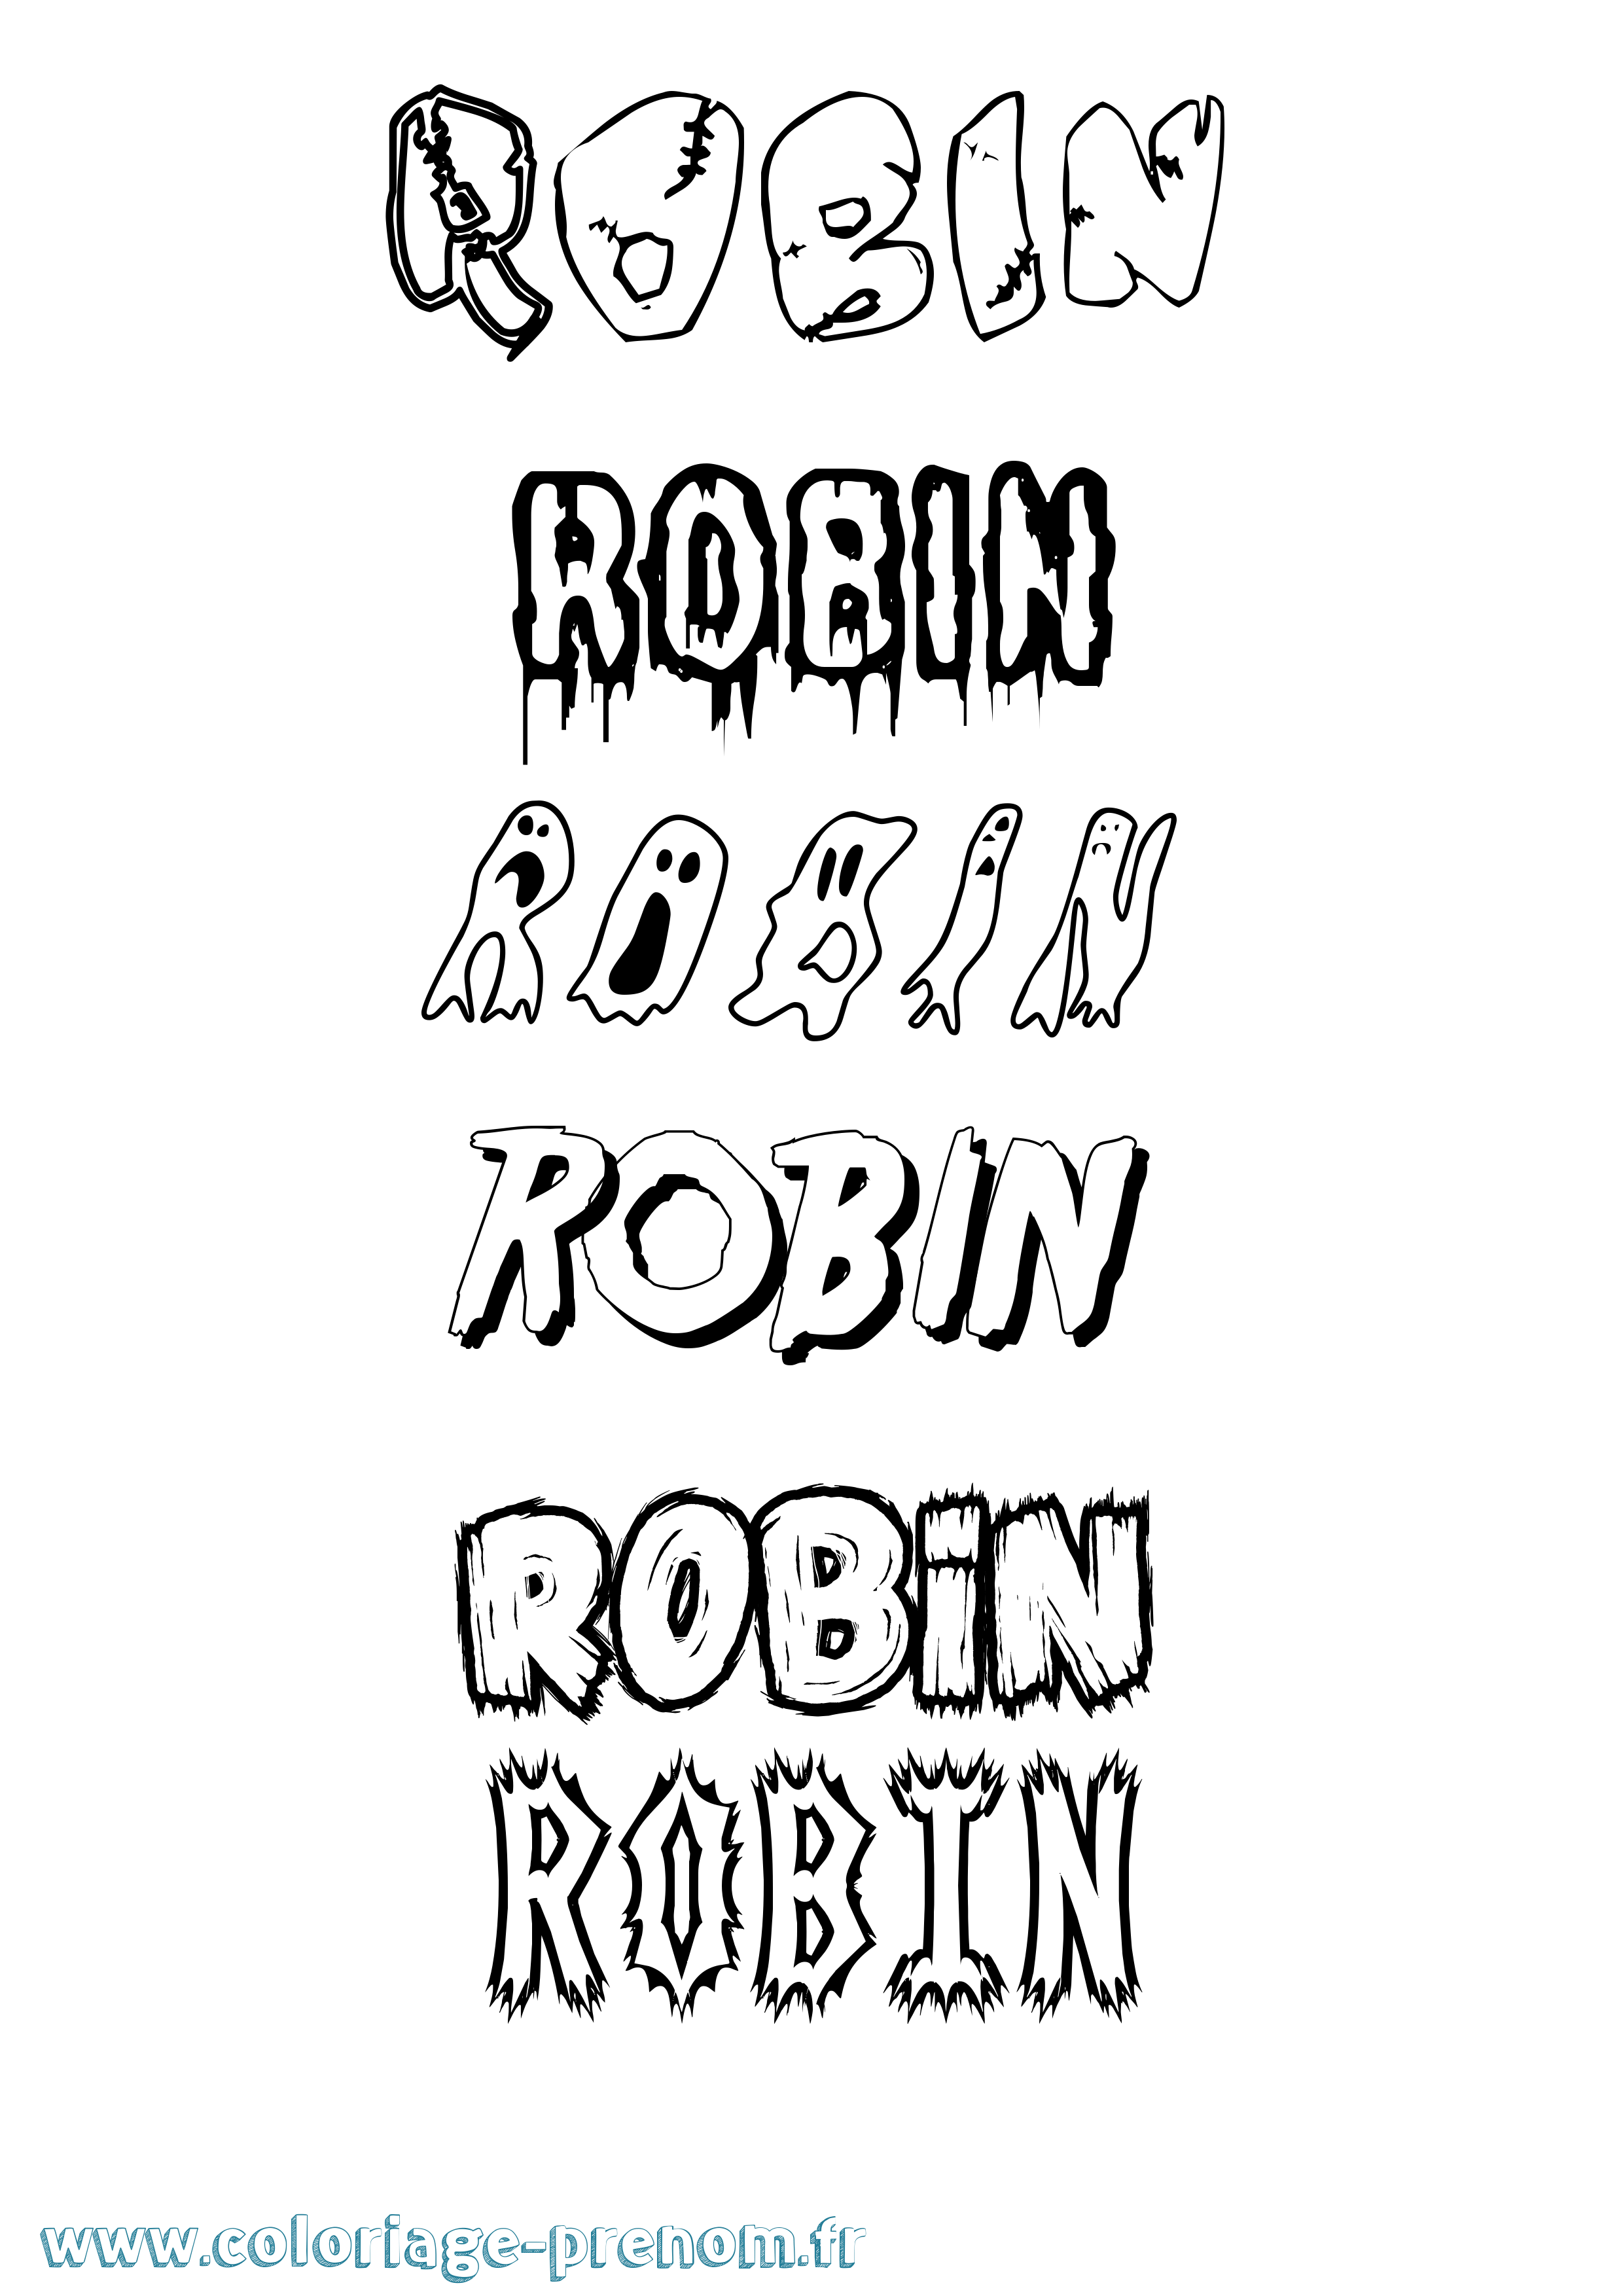 Coloriage prénom Robin Frisson